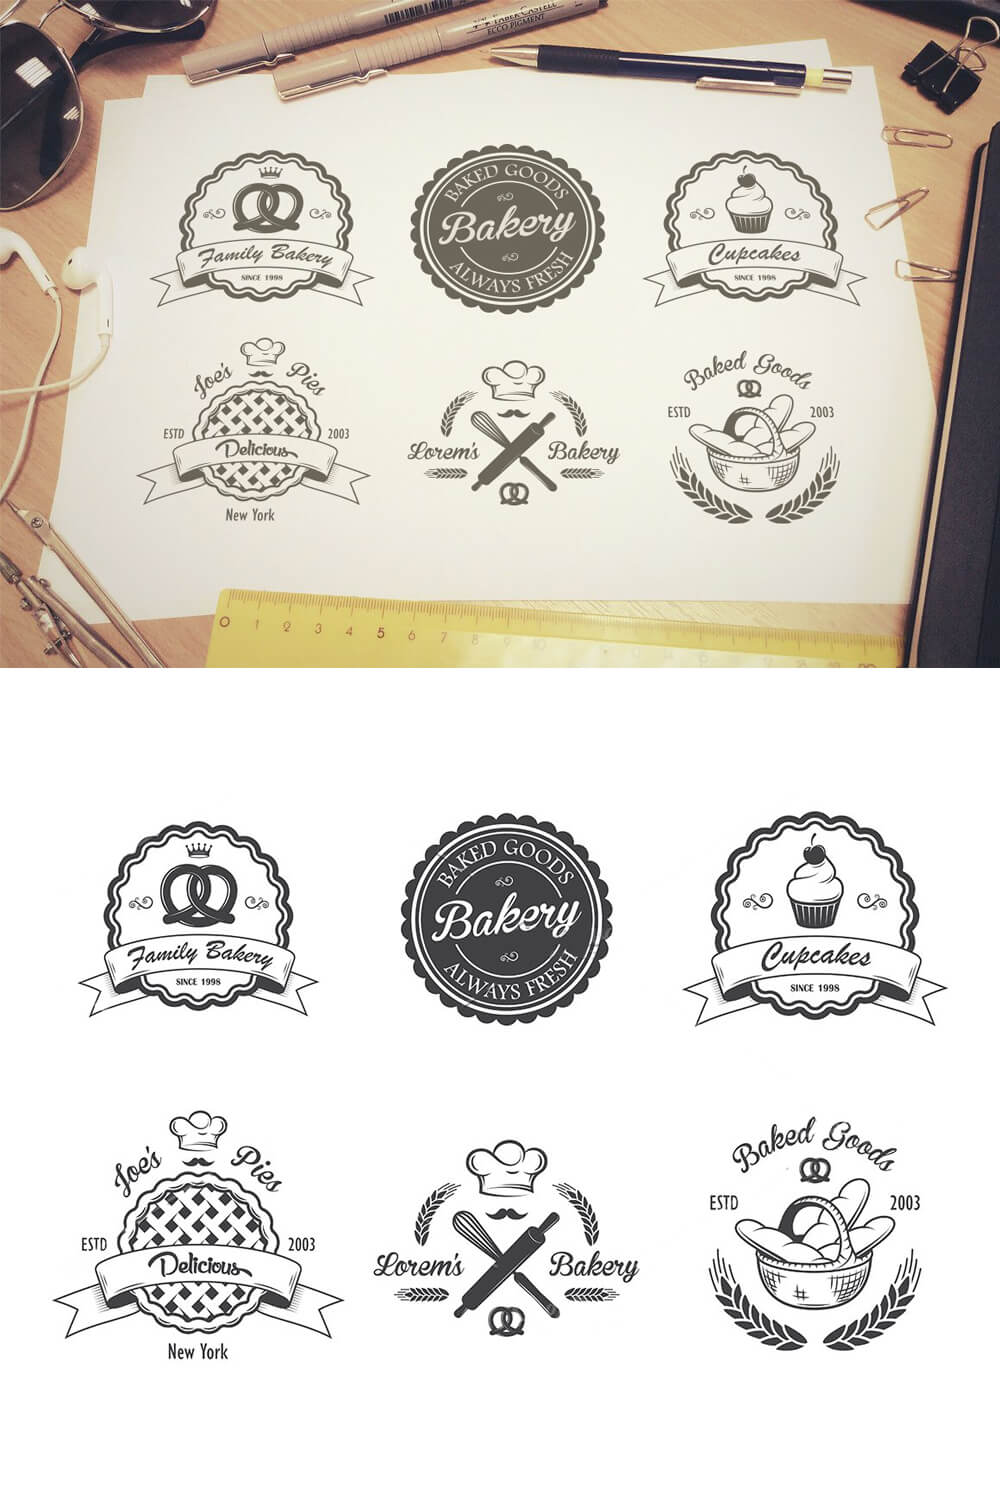 Six bakery vintage emblem logos on a white sheet.